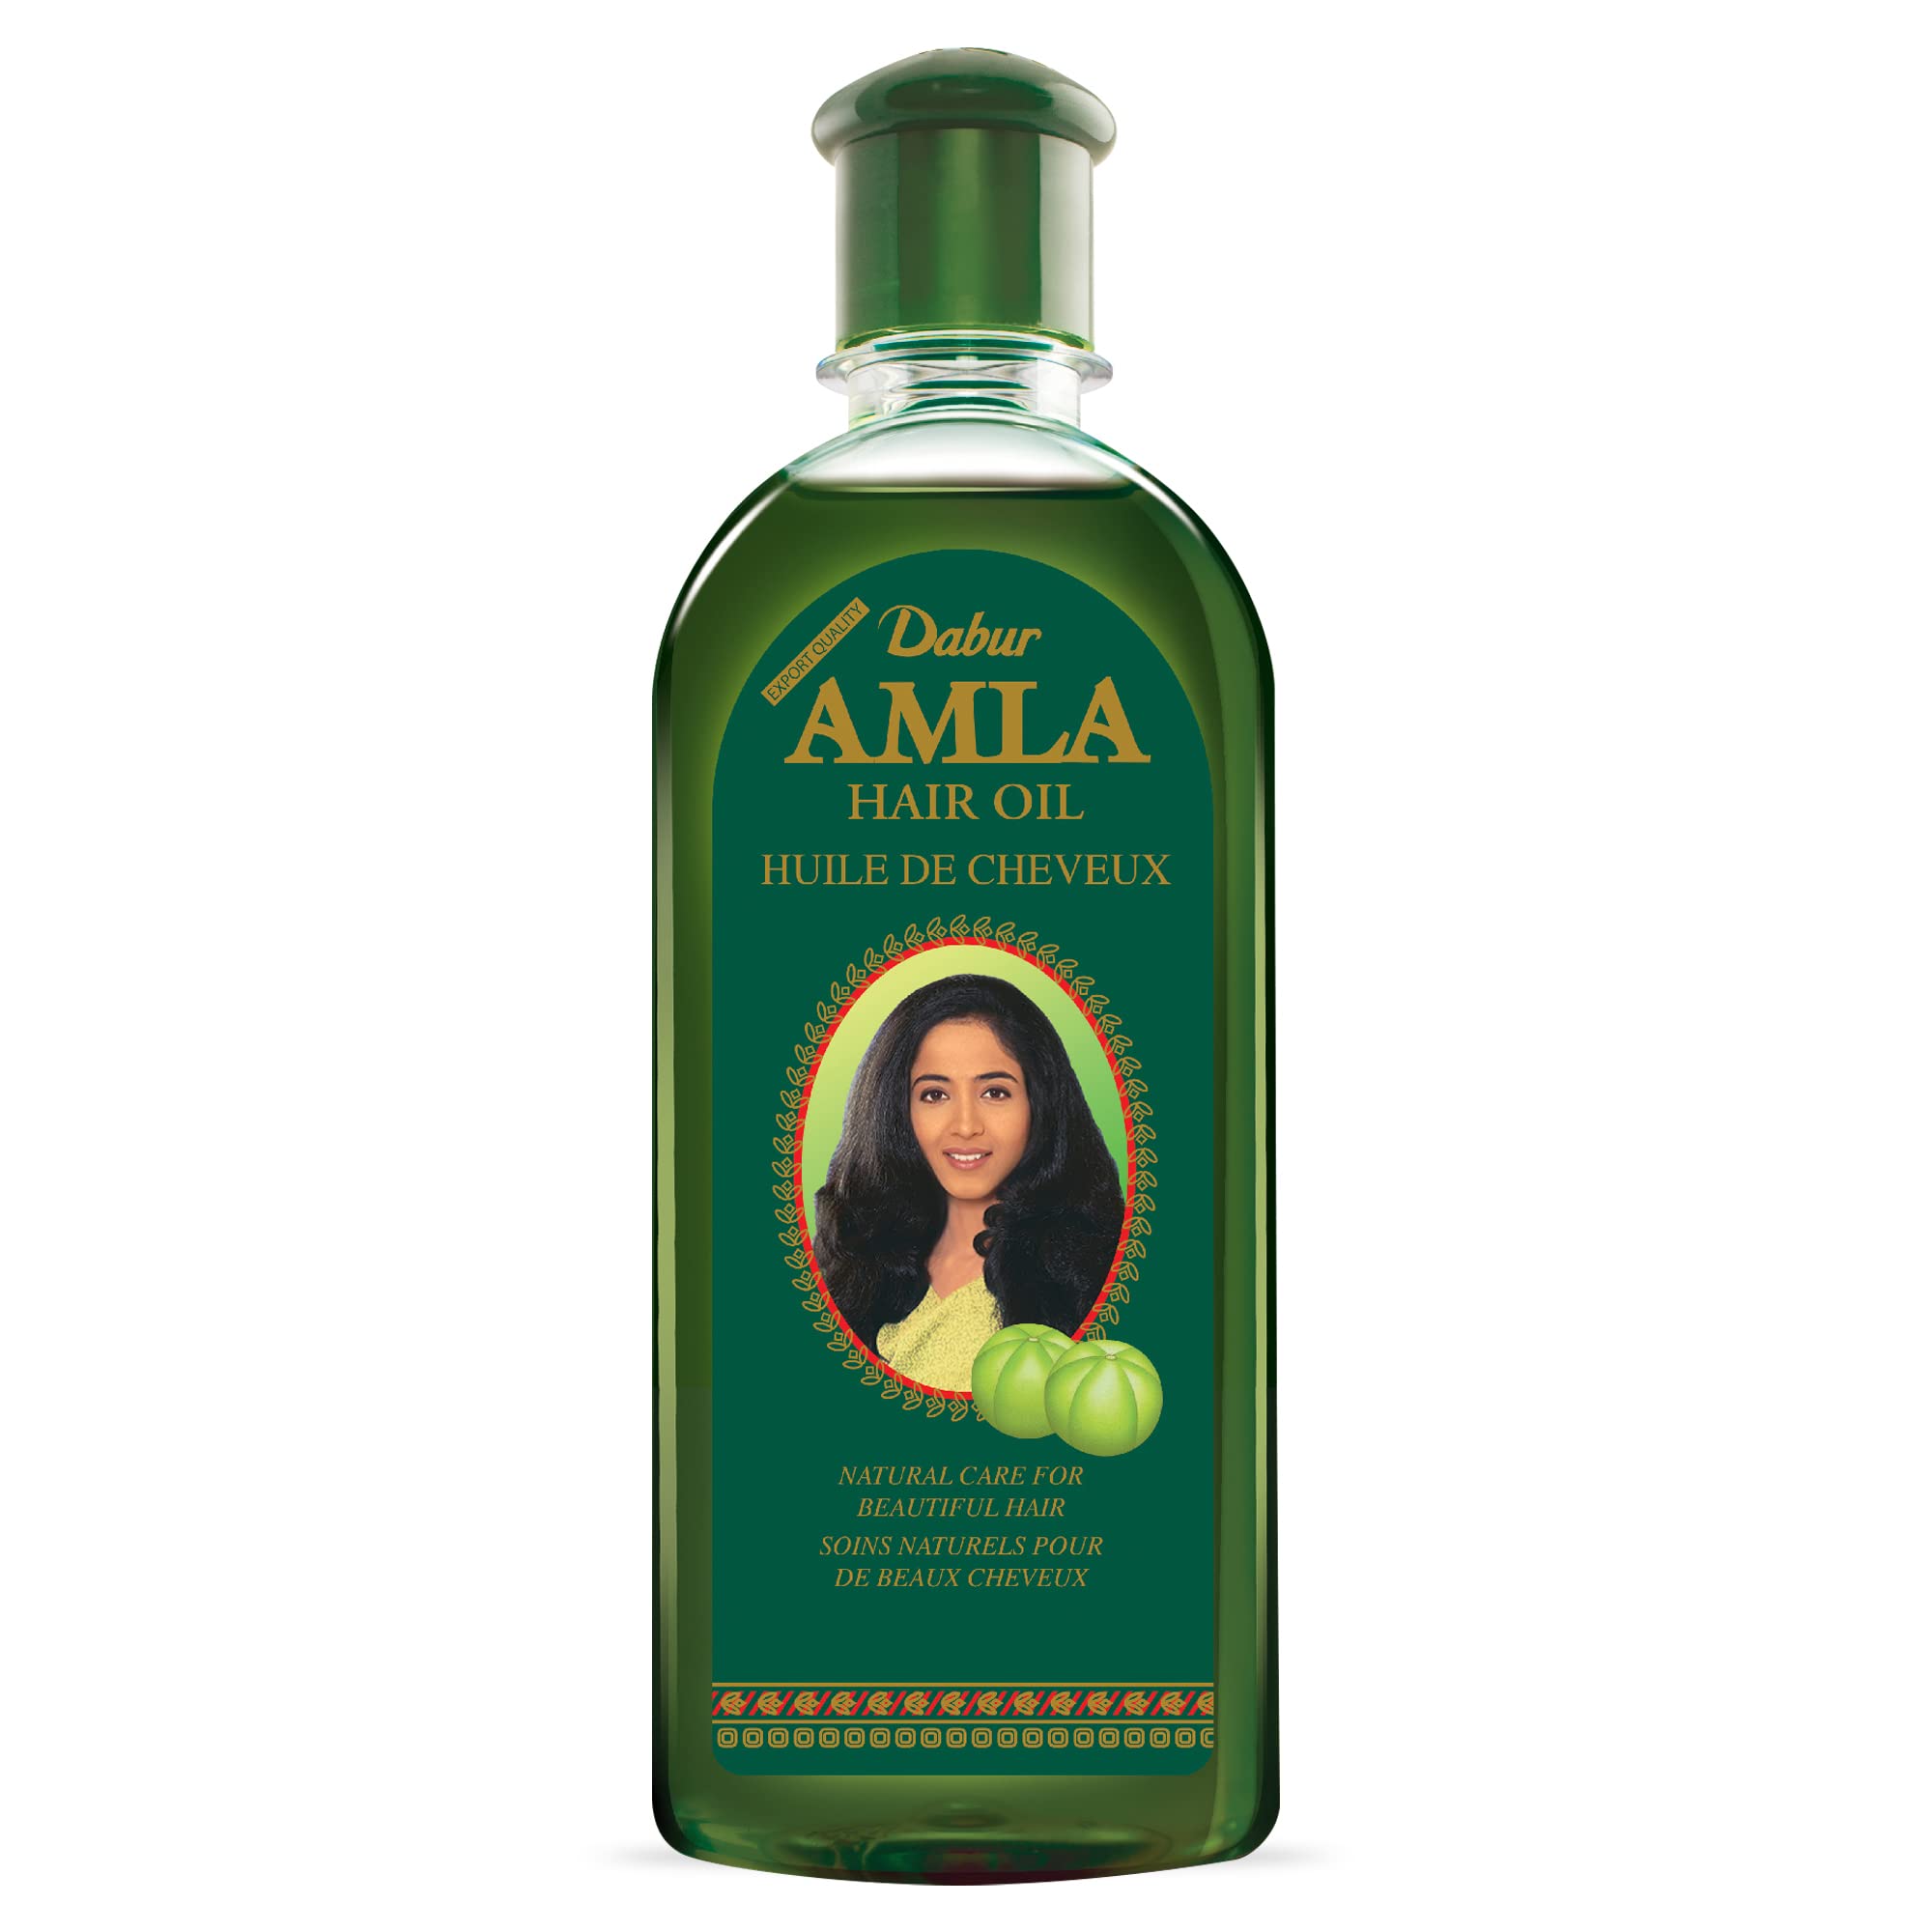 Dabur Amla Hair oil - Natural care for beautiful hair, 500ml - image 2 of 7